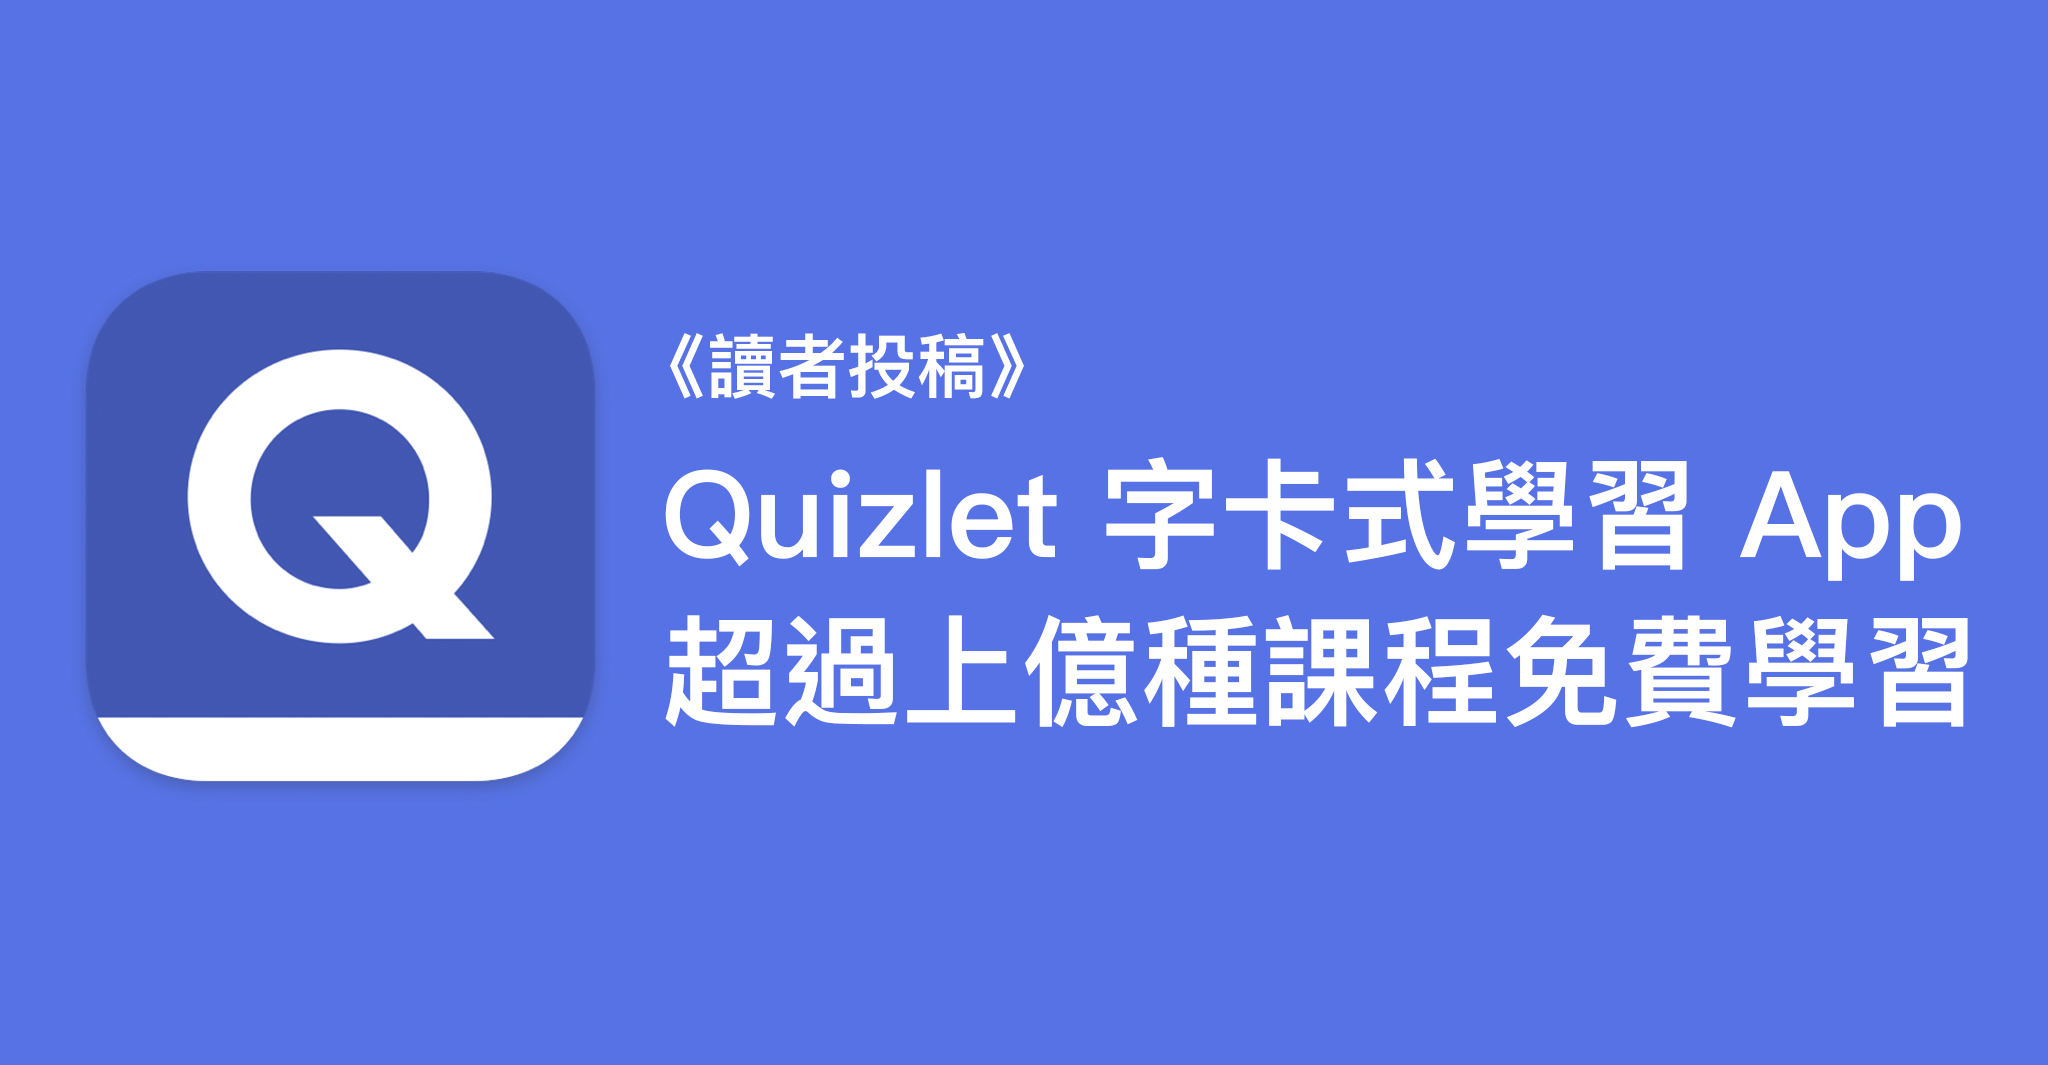 Quizlet 字卡式學習 App，超過上億種課程免費學習！